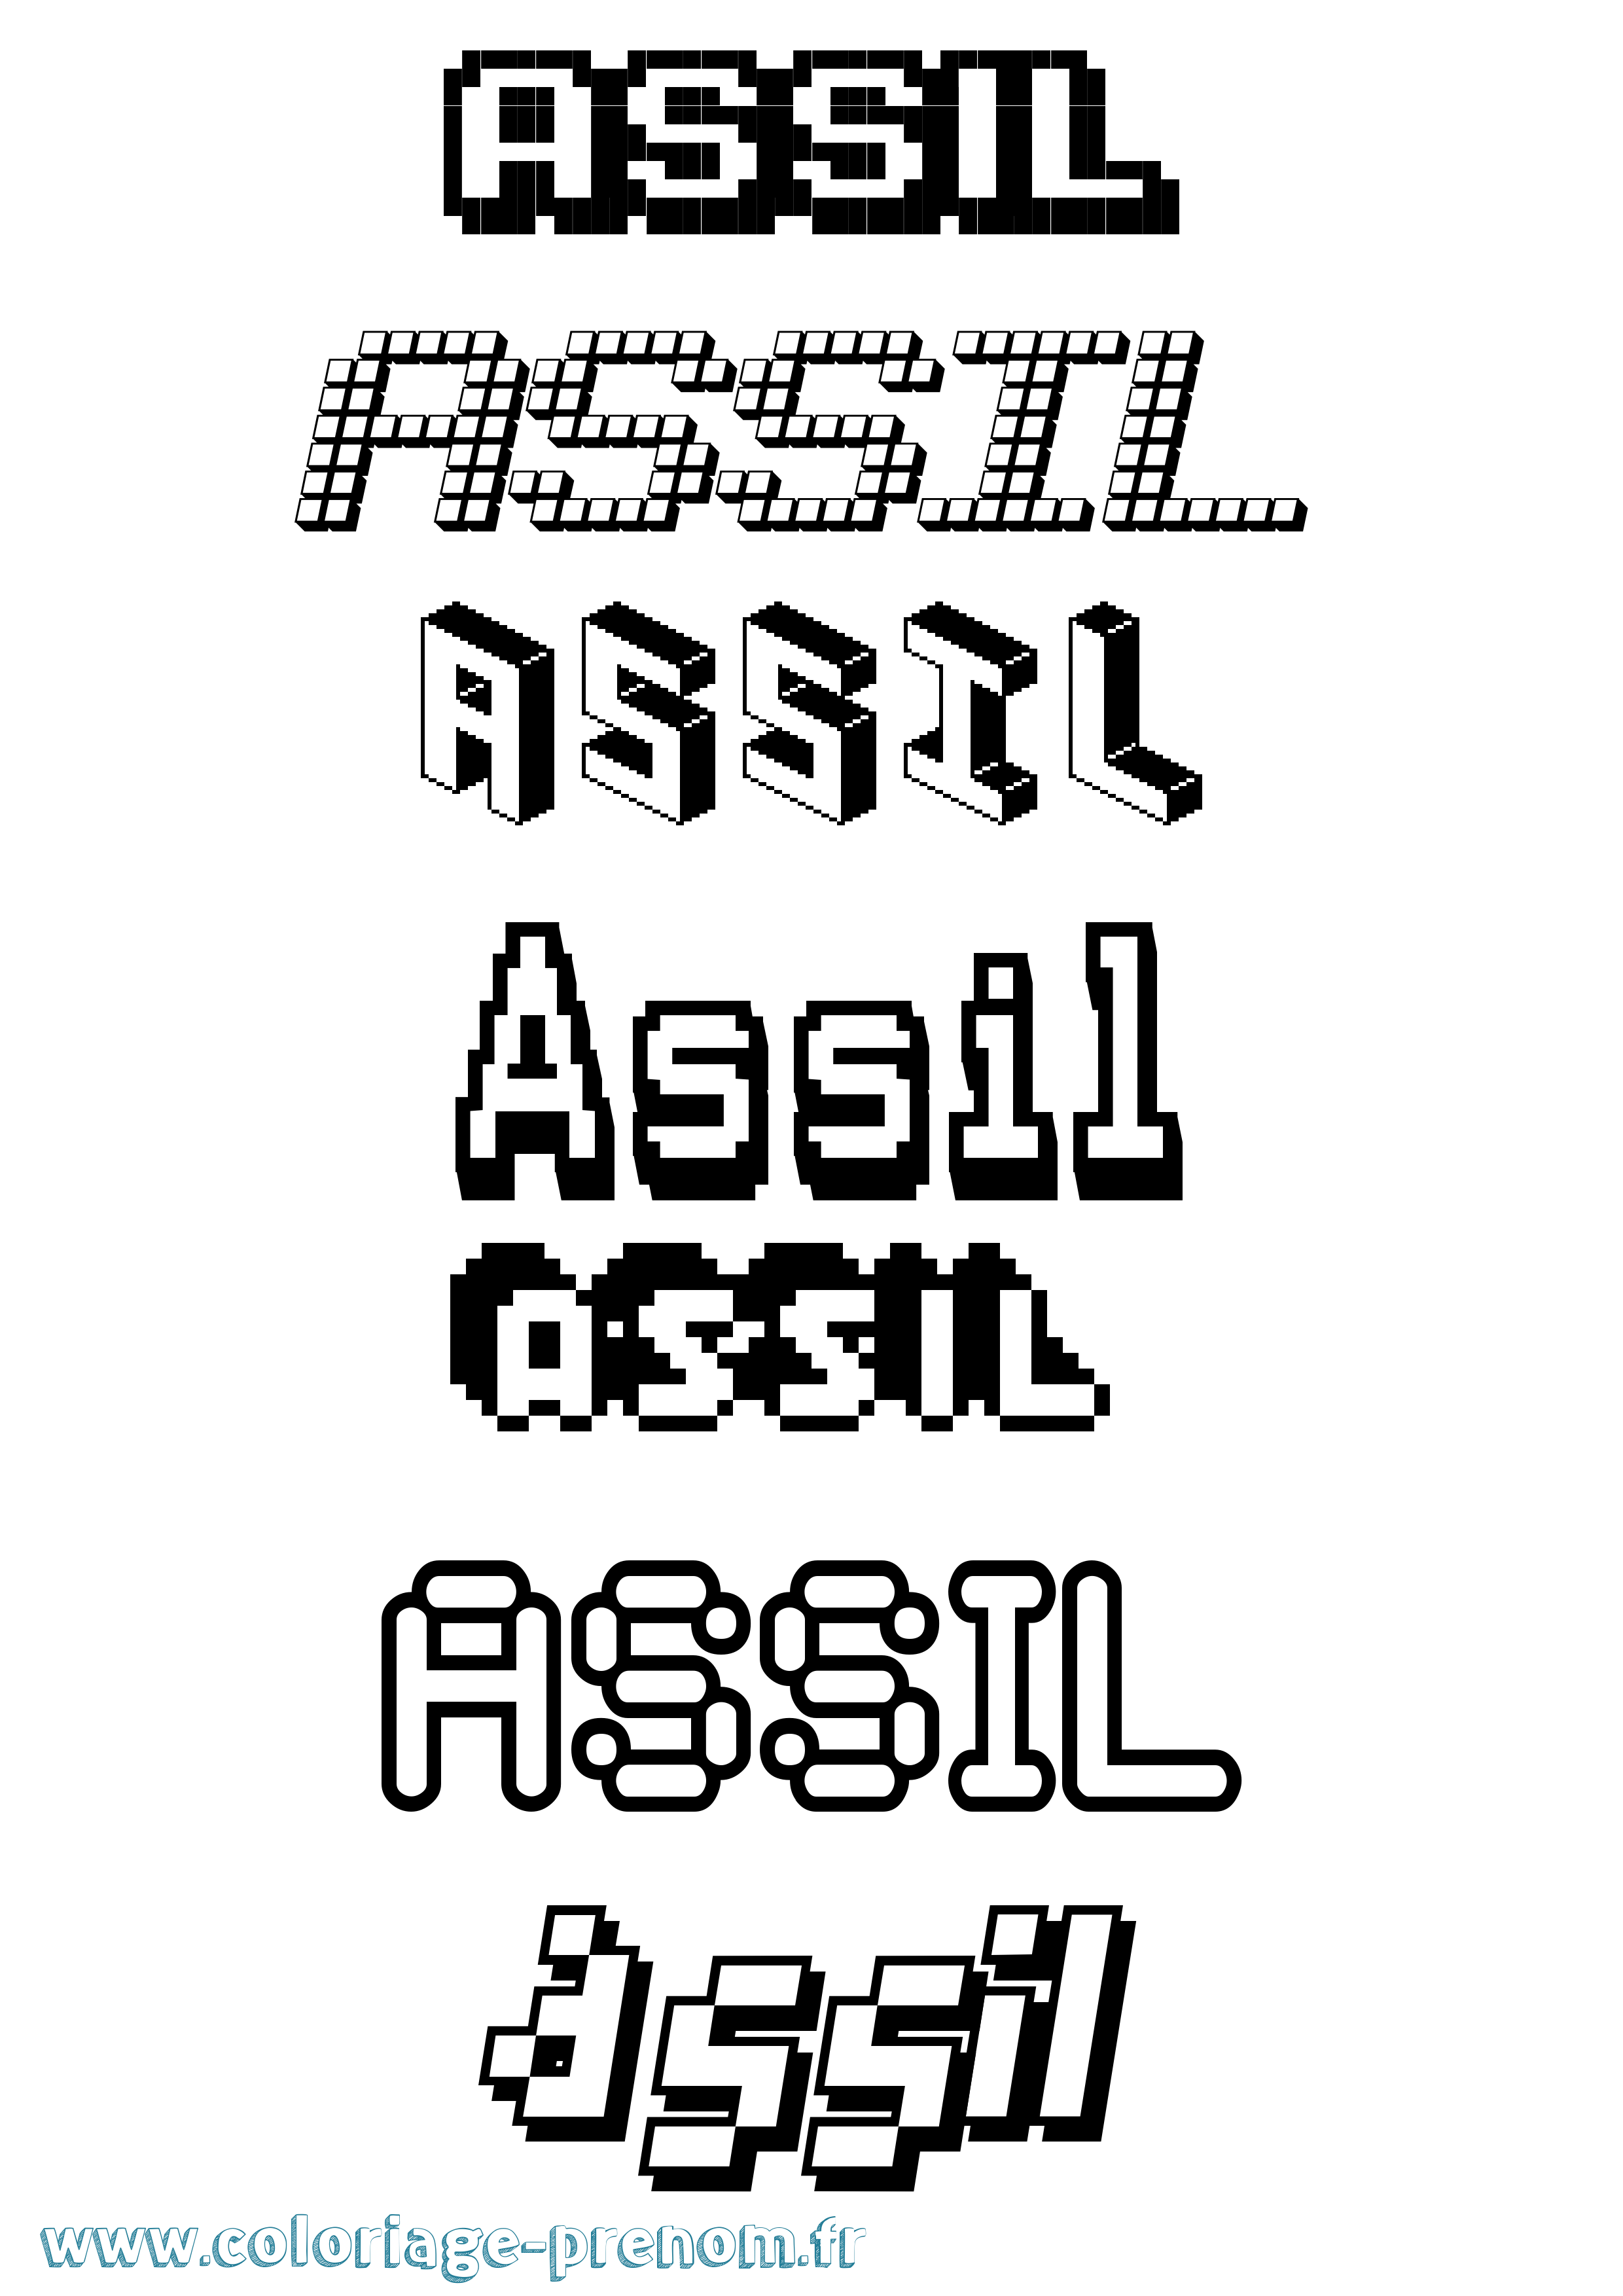 Coloriage prénom Assil Pixel